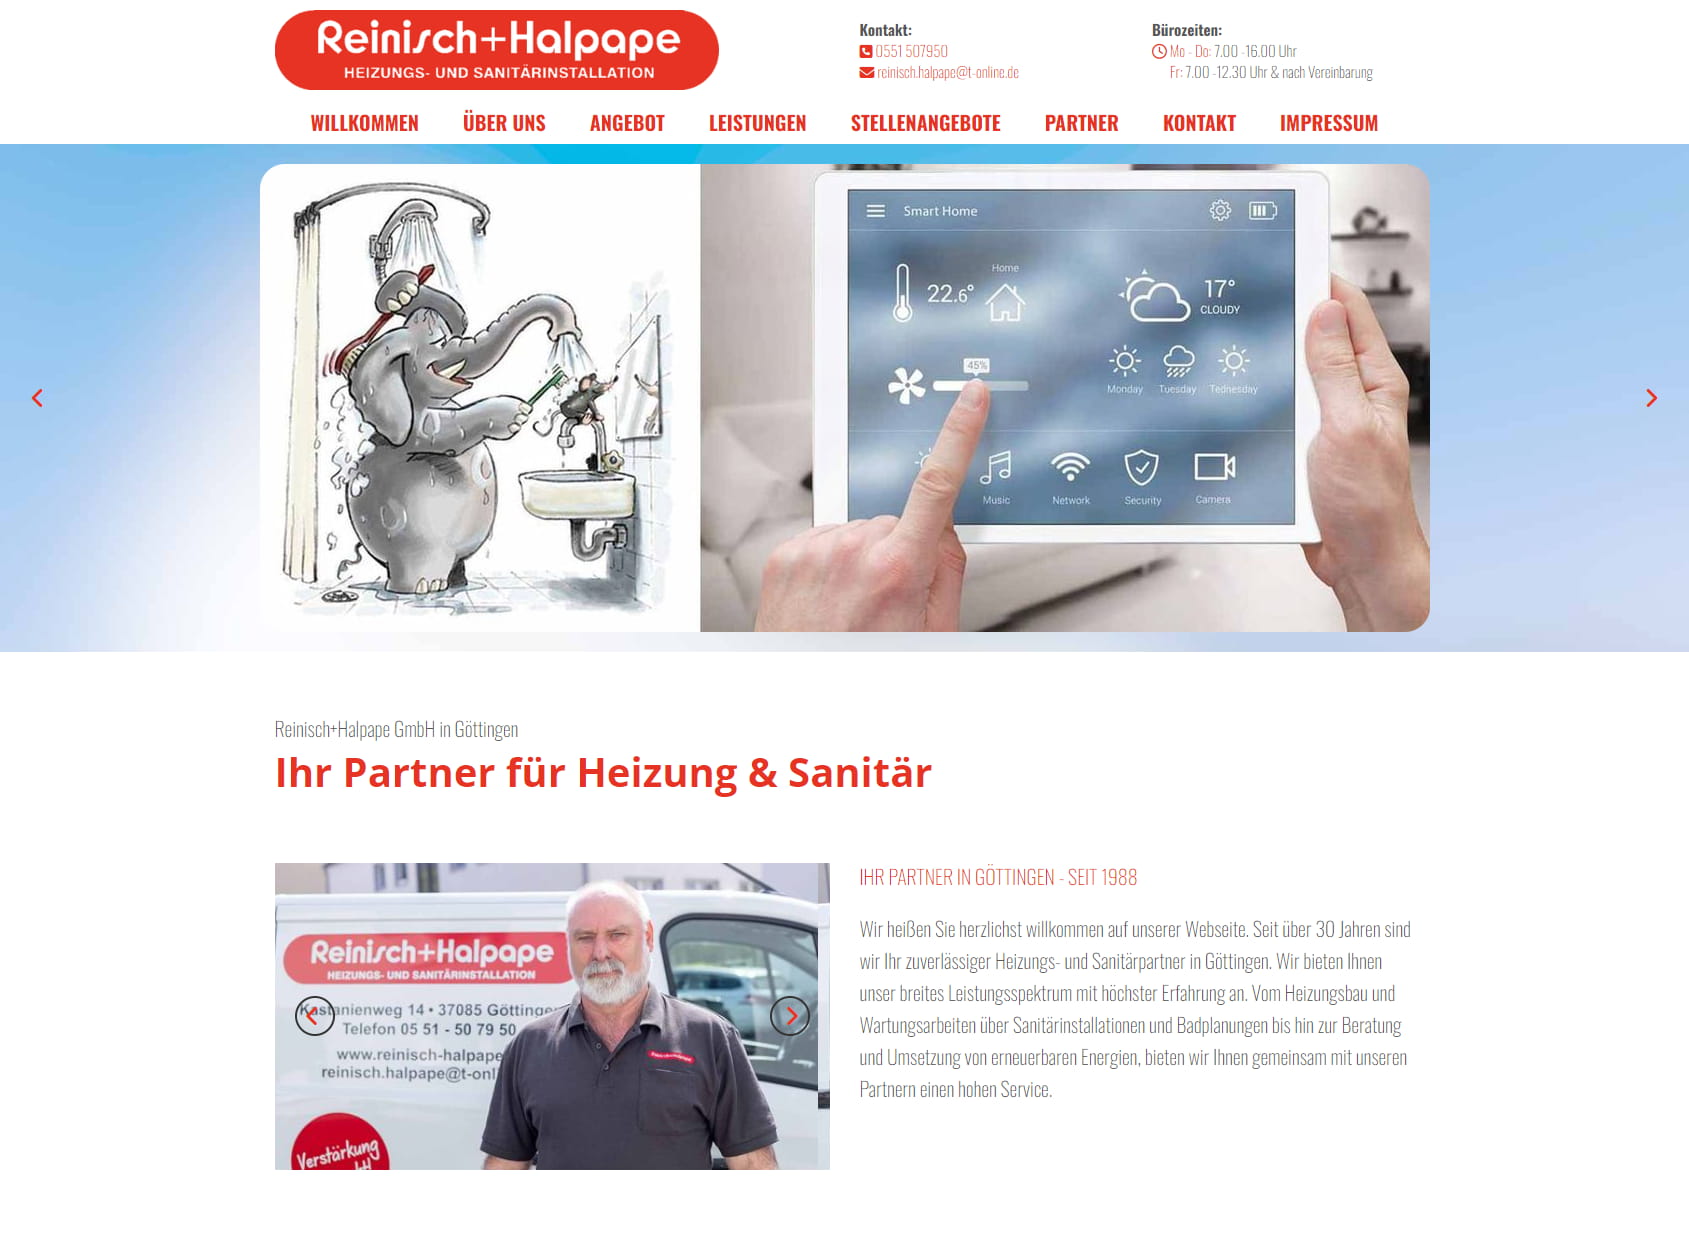 Reinisch & Halpape GmbH